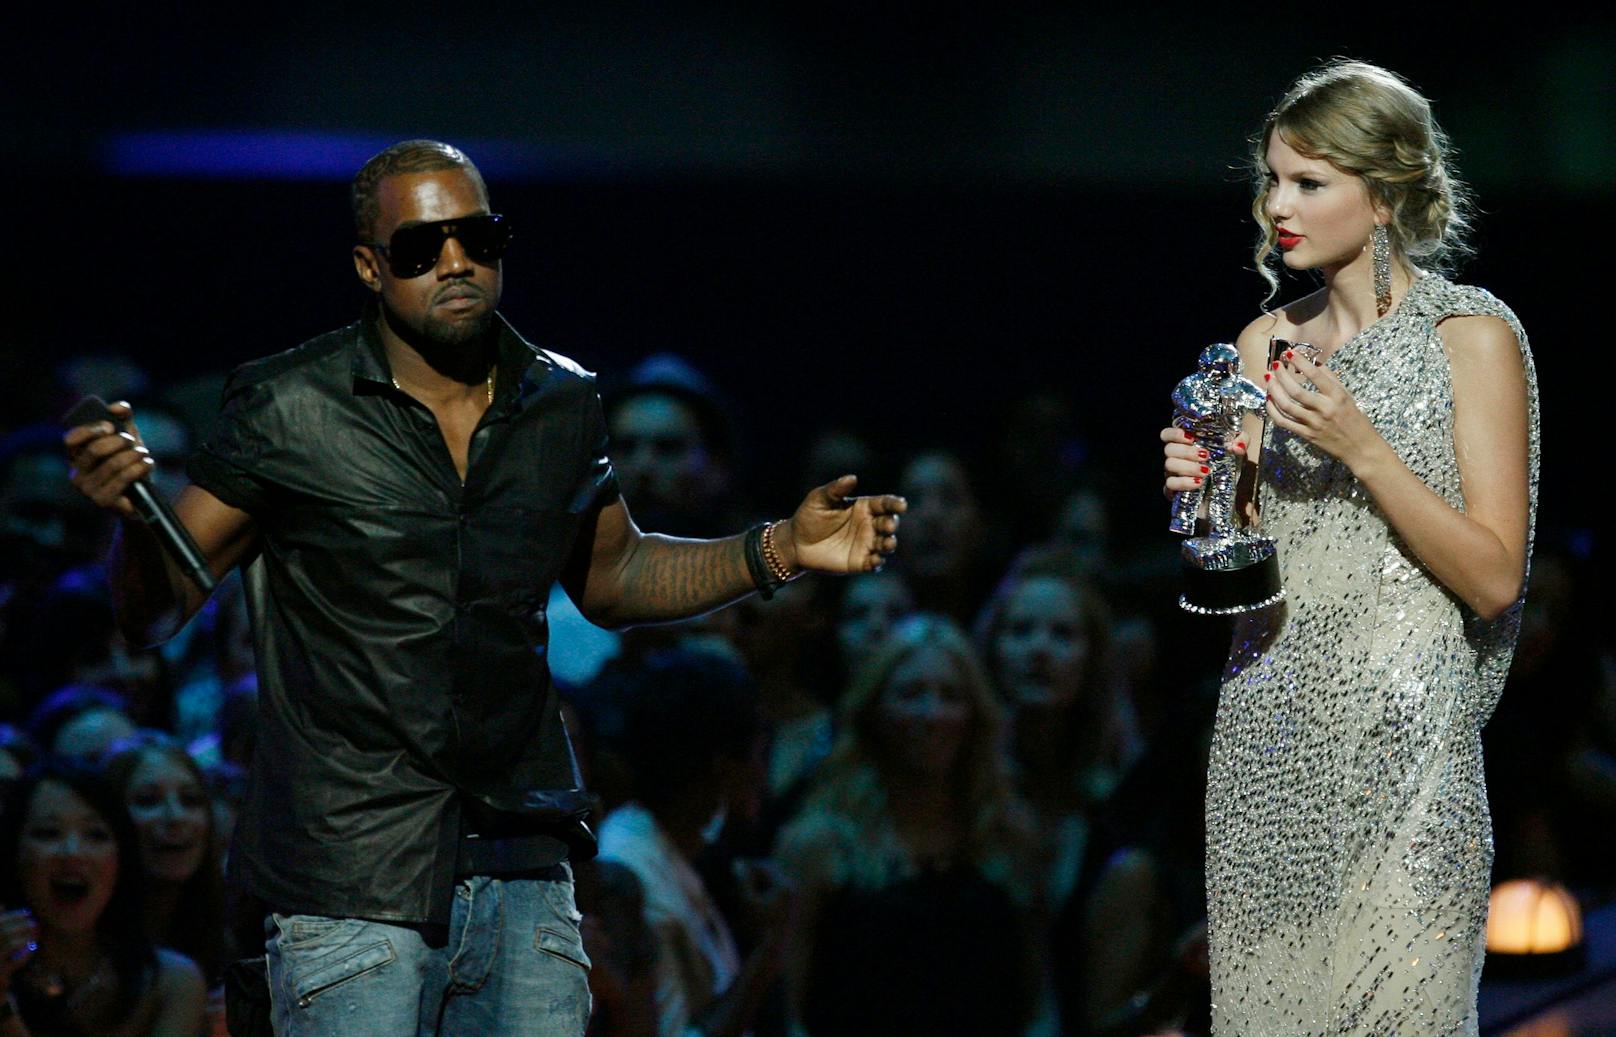 Doch mit dem ganzen Ruhm, kommen auch Feinde. Bei den MTV Video Music Awards 2009, entreißt ihr Rapper Kanye West den gewonnenen Preis und kritisiert sie vor laufender Kamera. Ihre Fehde zieht sich bis heute...